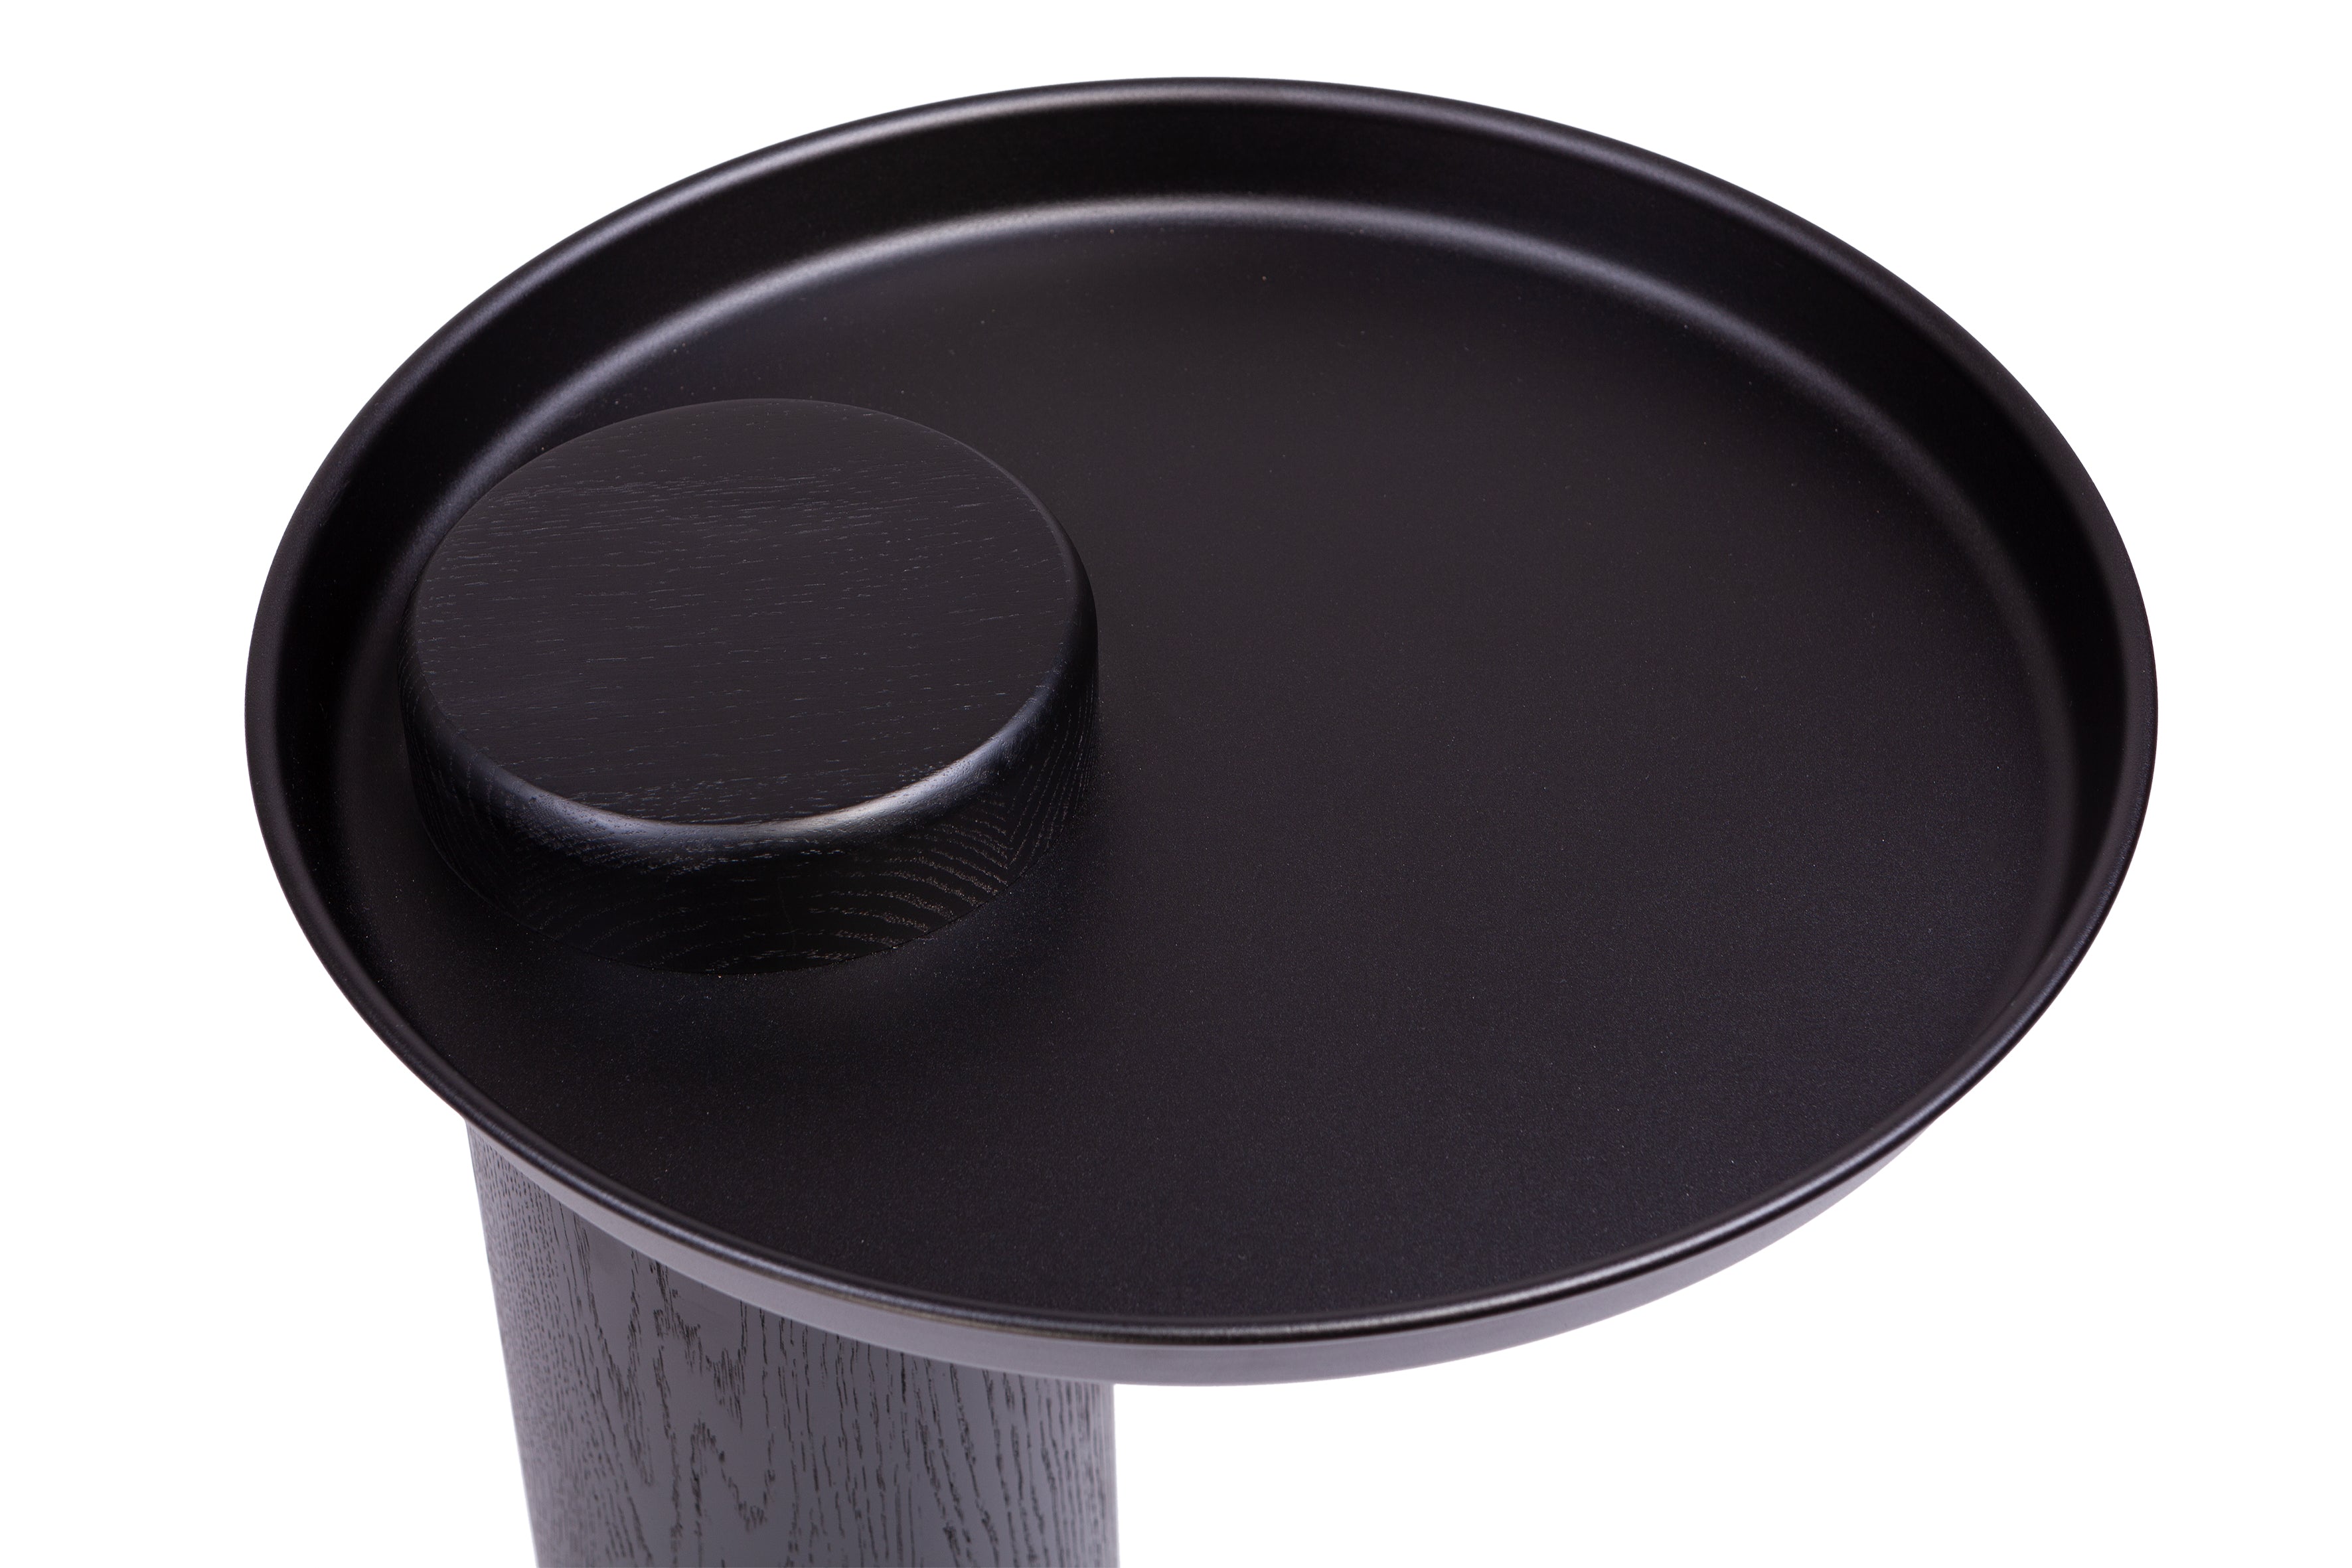 SKIEN #1 black oak table with black top